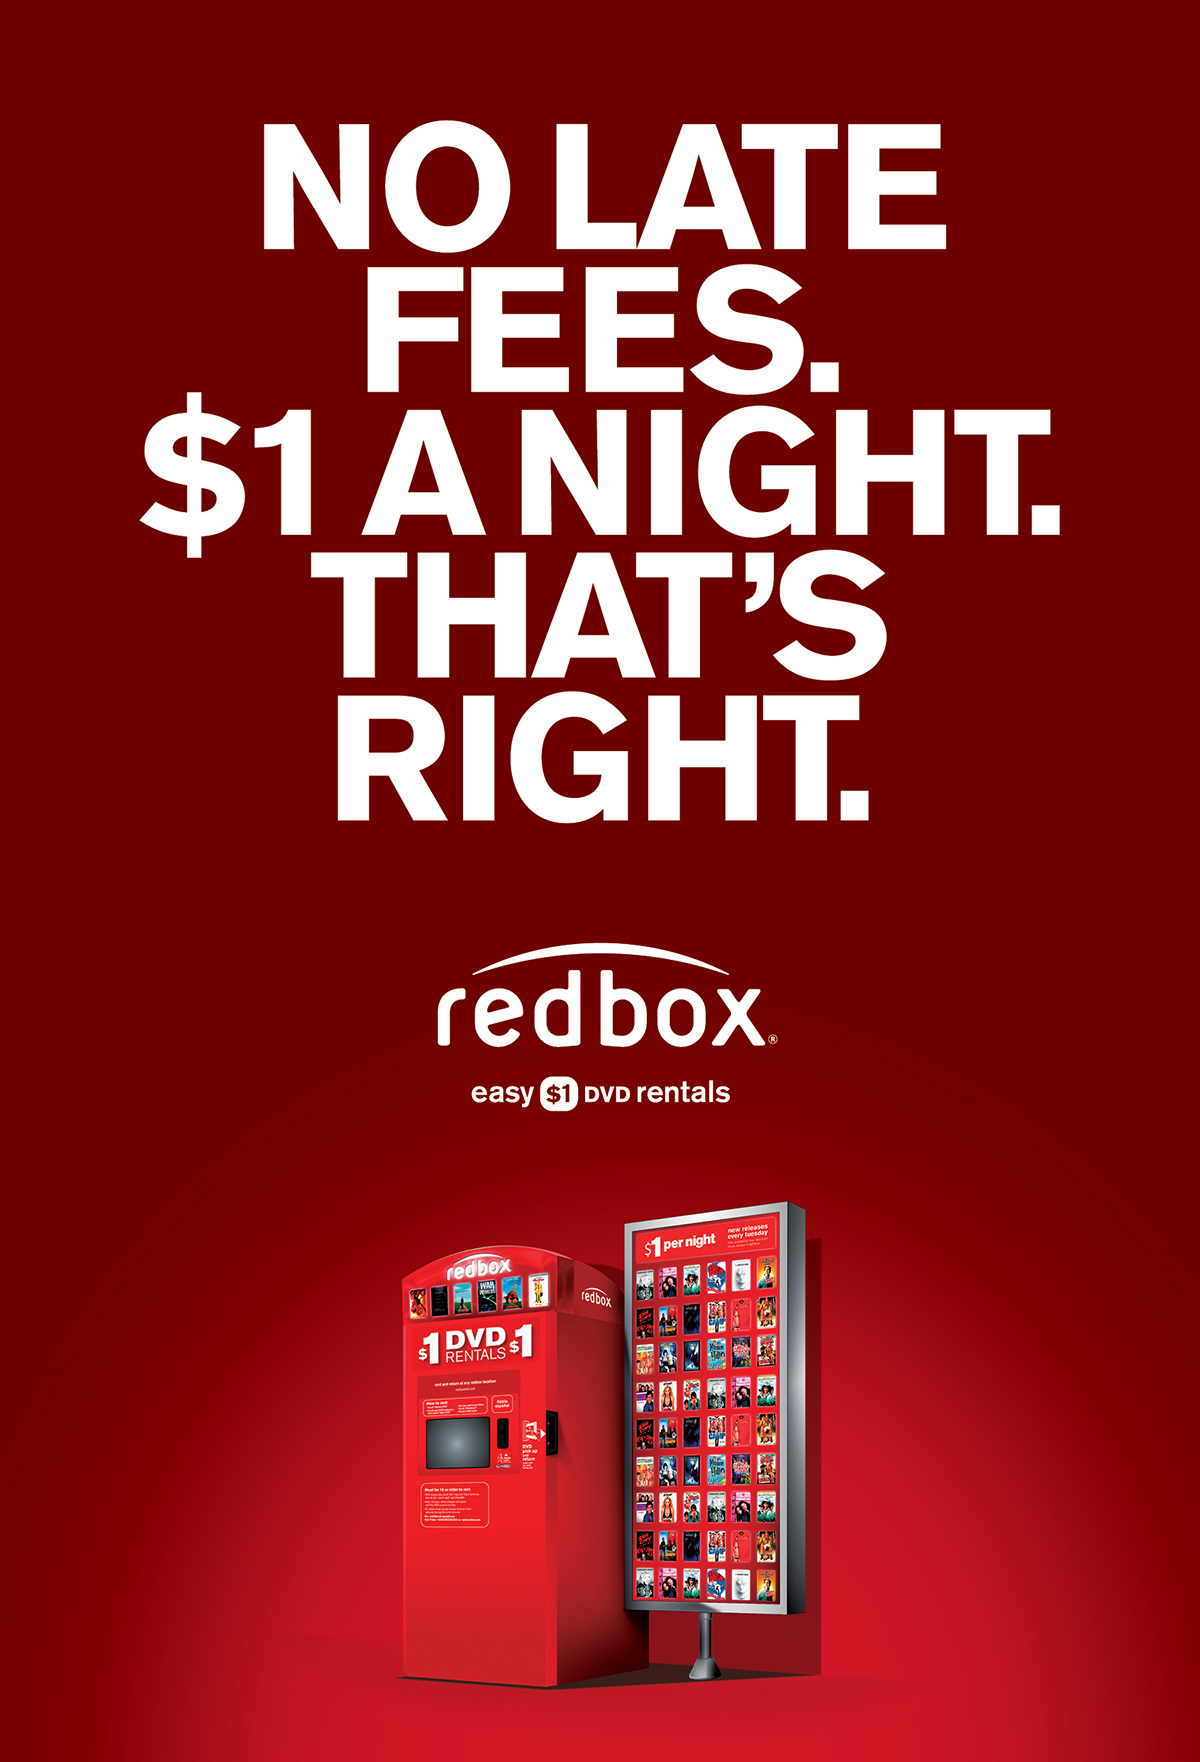 Adobe Portfolio redbox